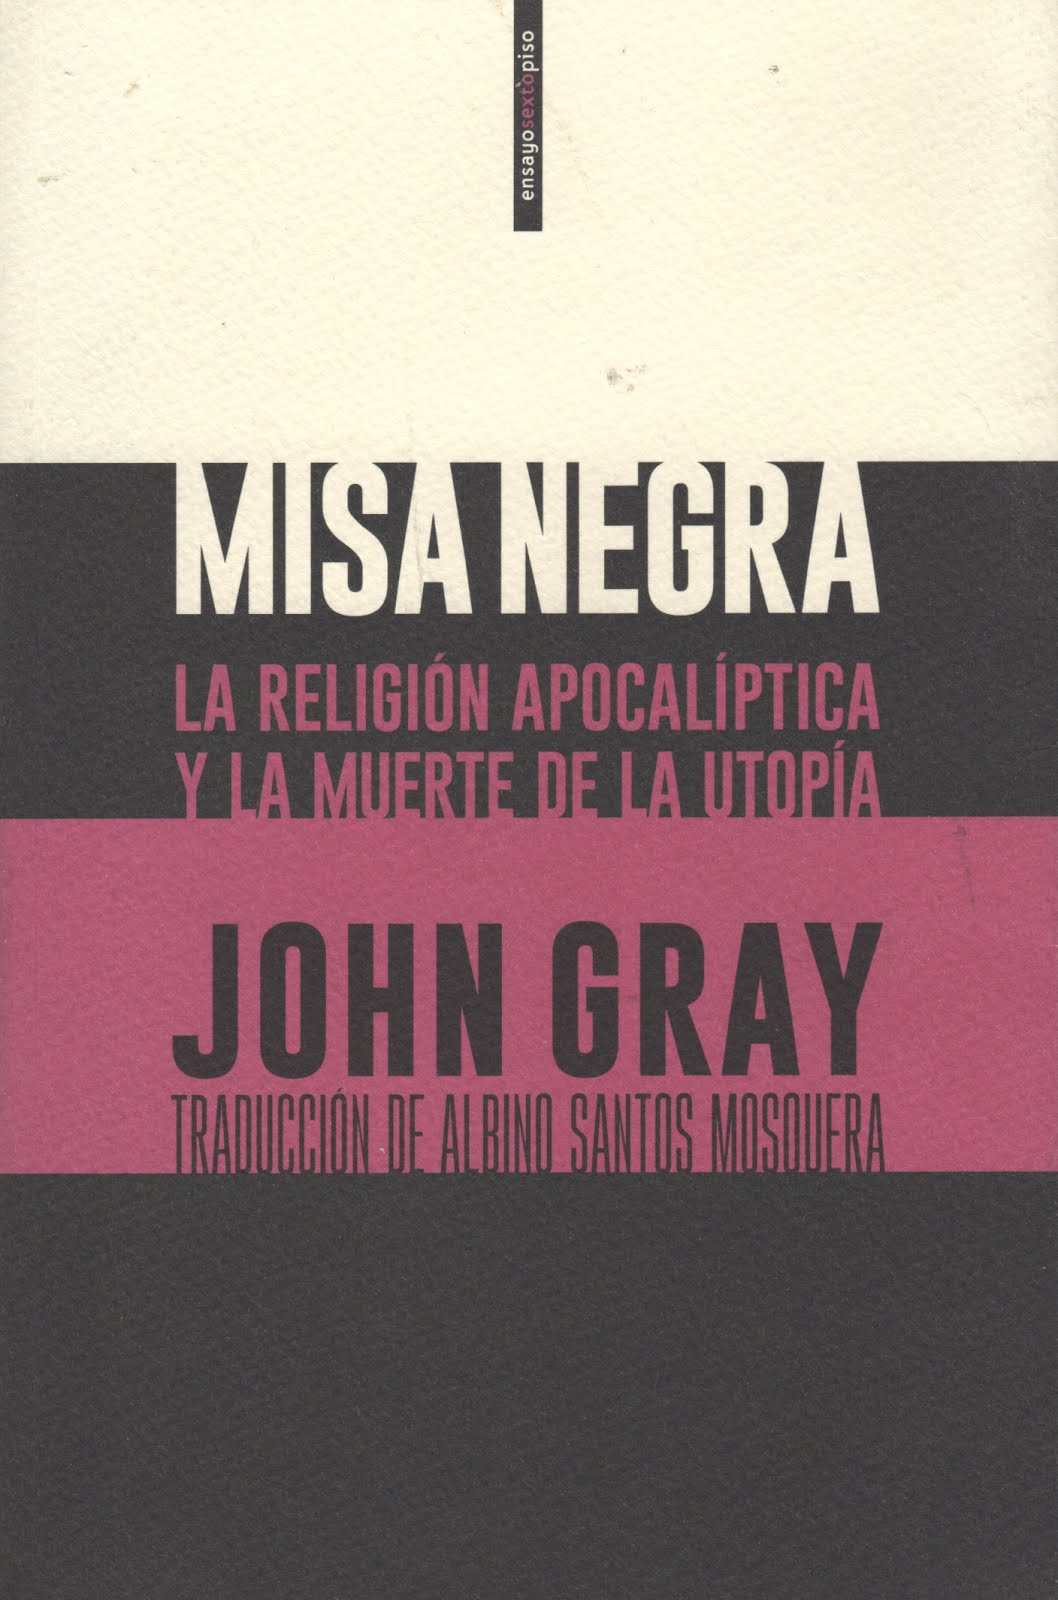 John Gray (Misa negra) La religión apocalíptica y la muerte de la utopía